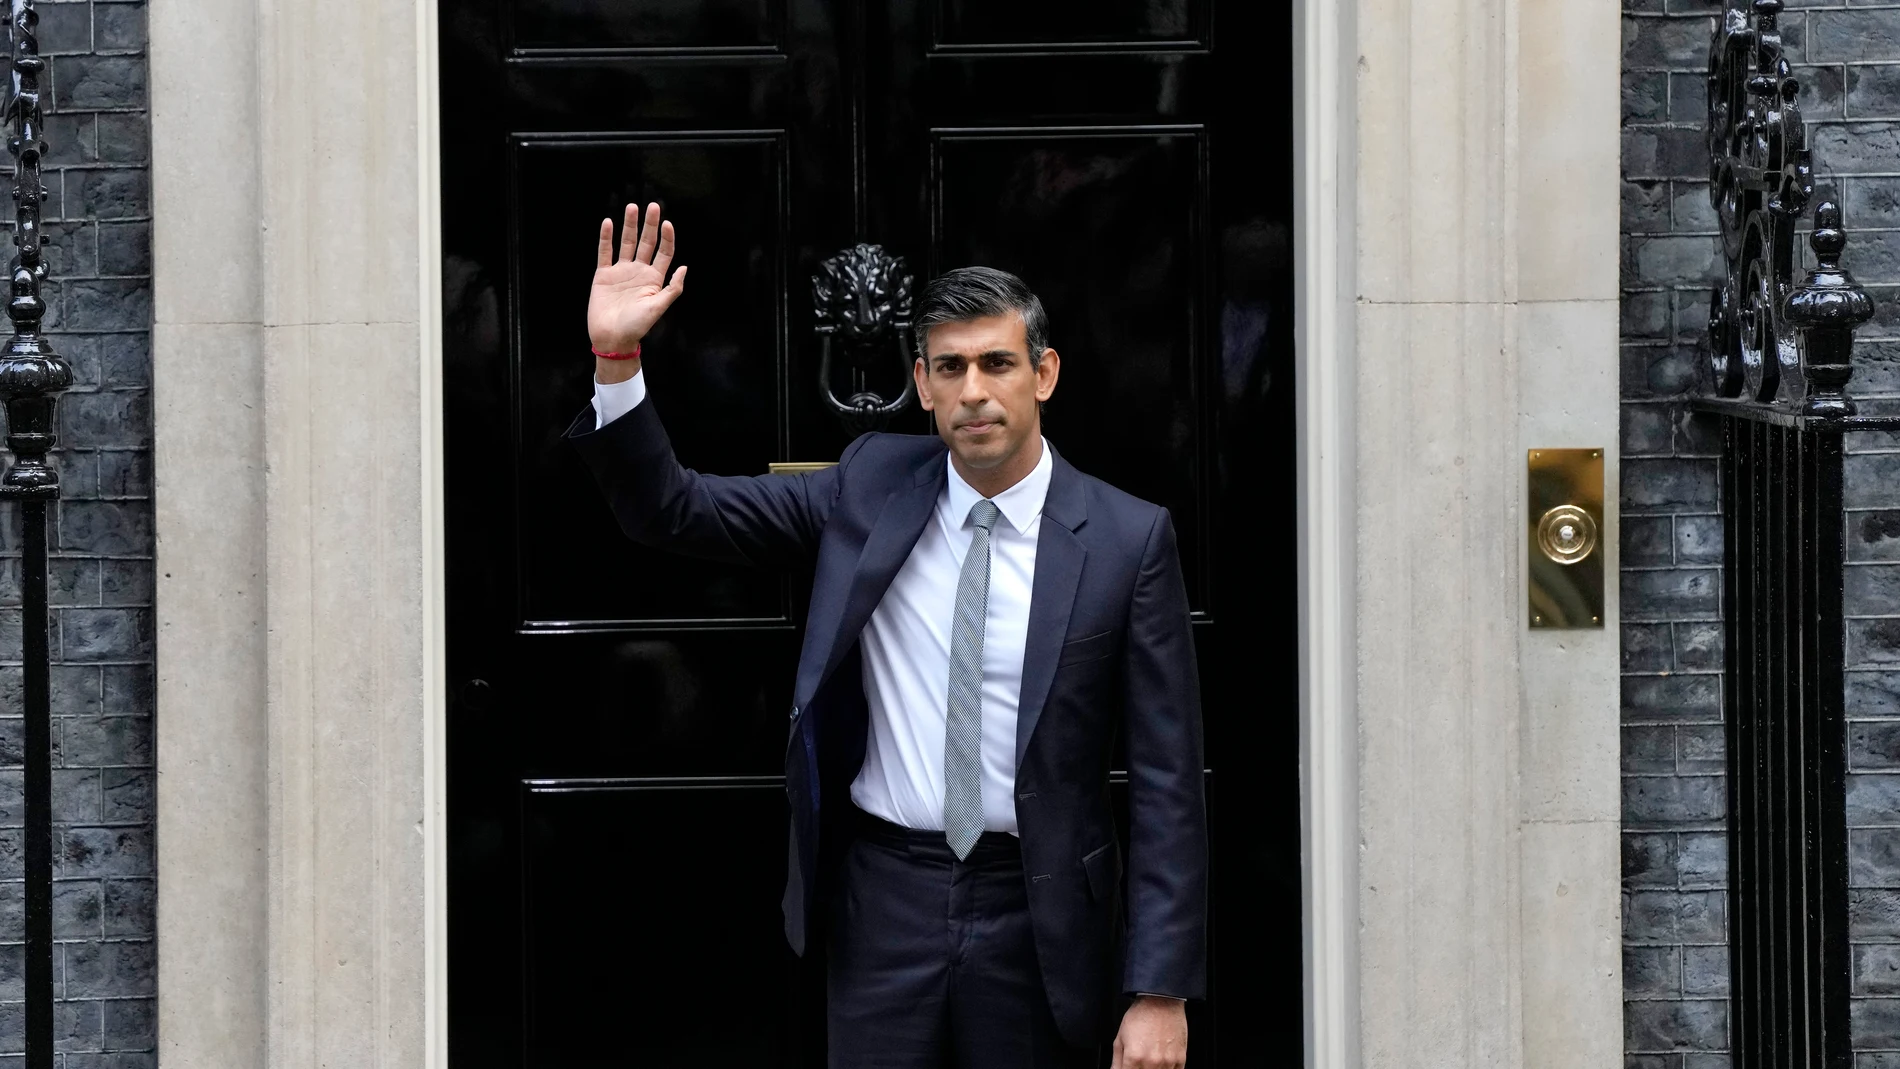 El nuevo primer ministro británico, Rishi Sunak, en la entrada del 10 de Downing Street.